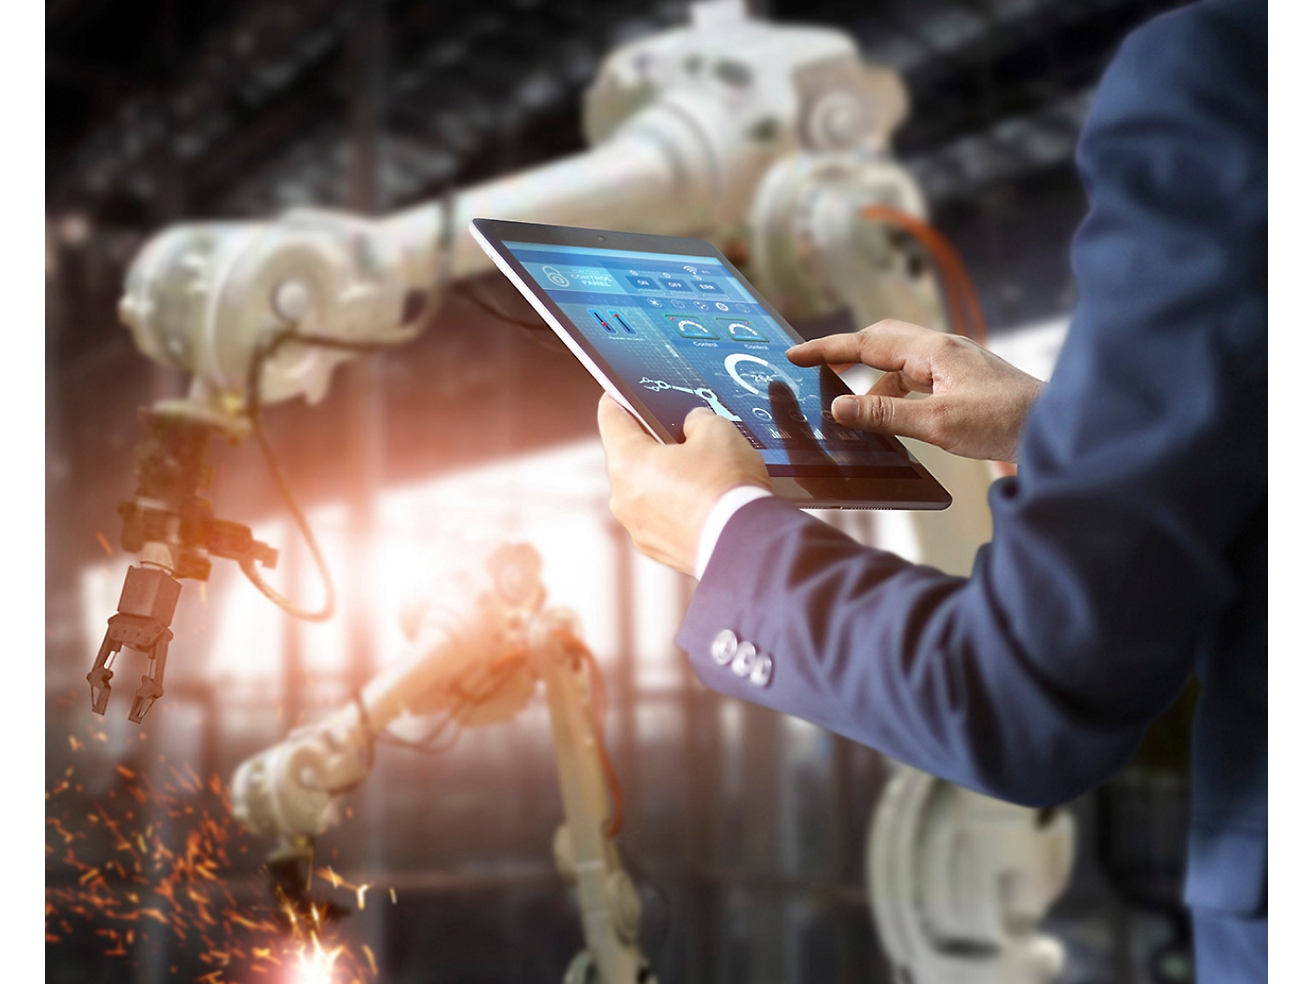 Eine Person in einer Fabrik kontrolliert über ein Tablet Roboterarme, was die Rolle hochentwickelter Automationstechnologie hervorhebt.